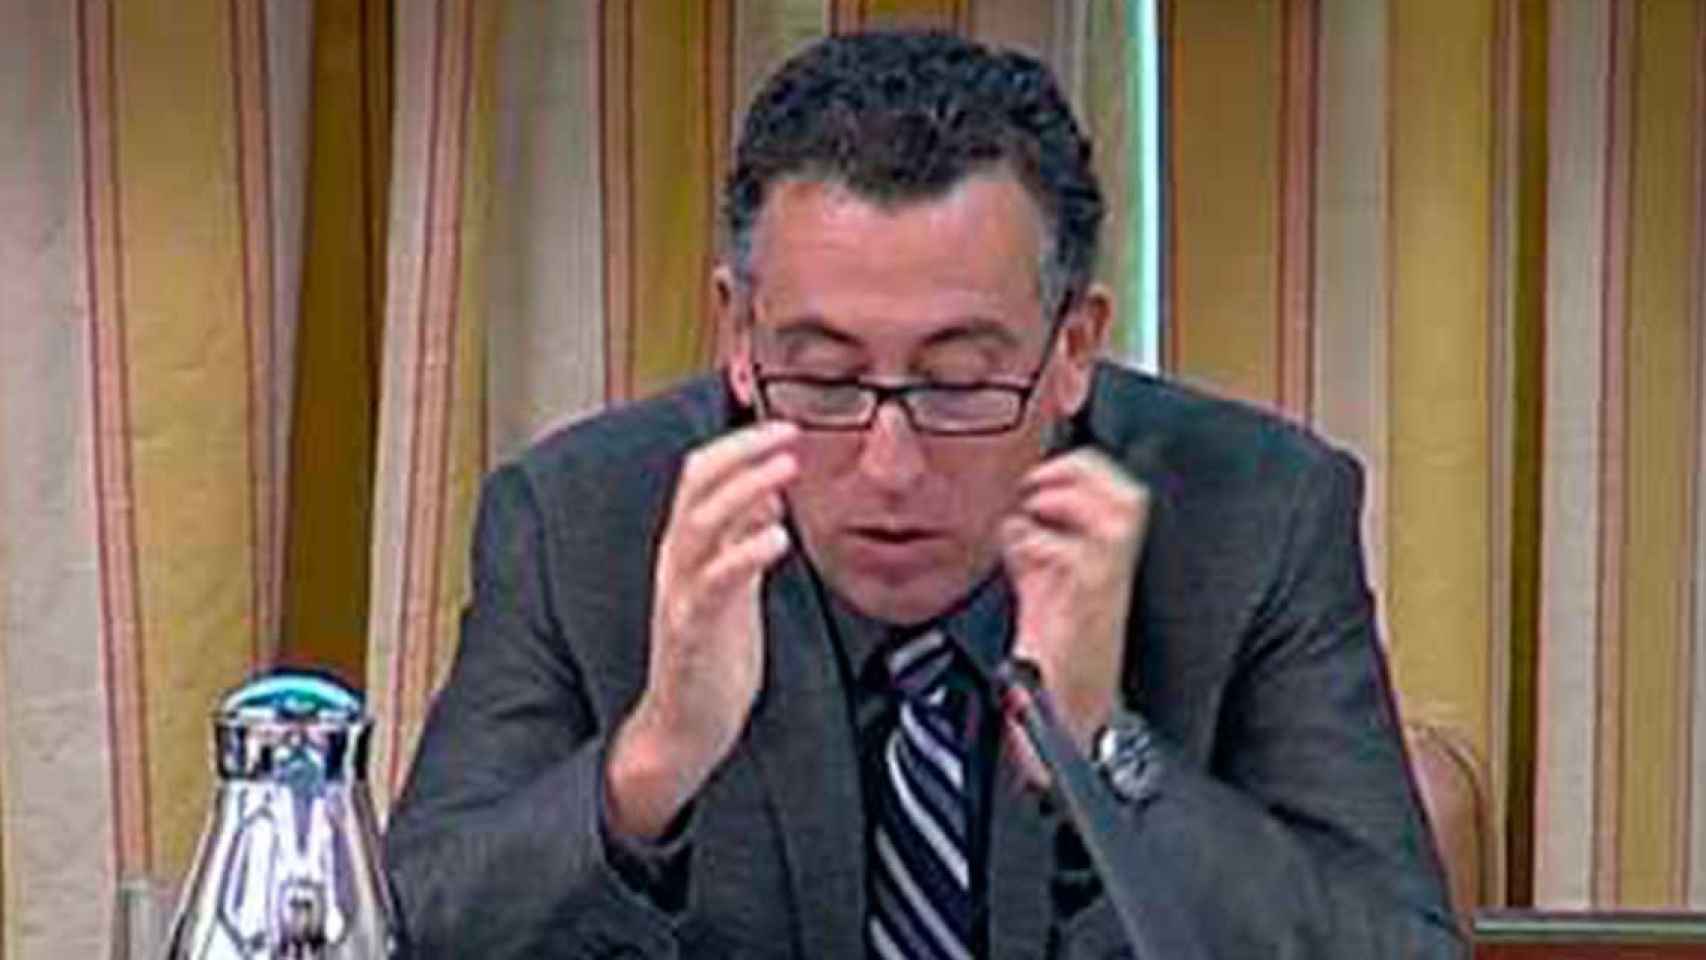 Dídac Pestaña, en una imagen en el Congreso de los Diputados, fue alcalde de Gavà / CONGRESO DIPUTADOS